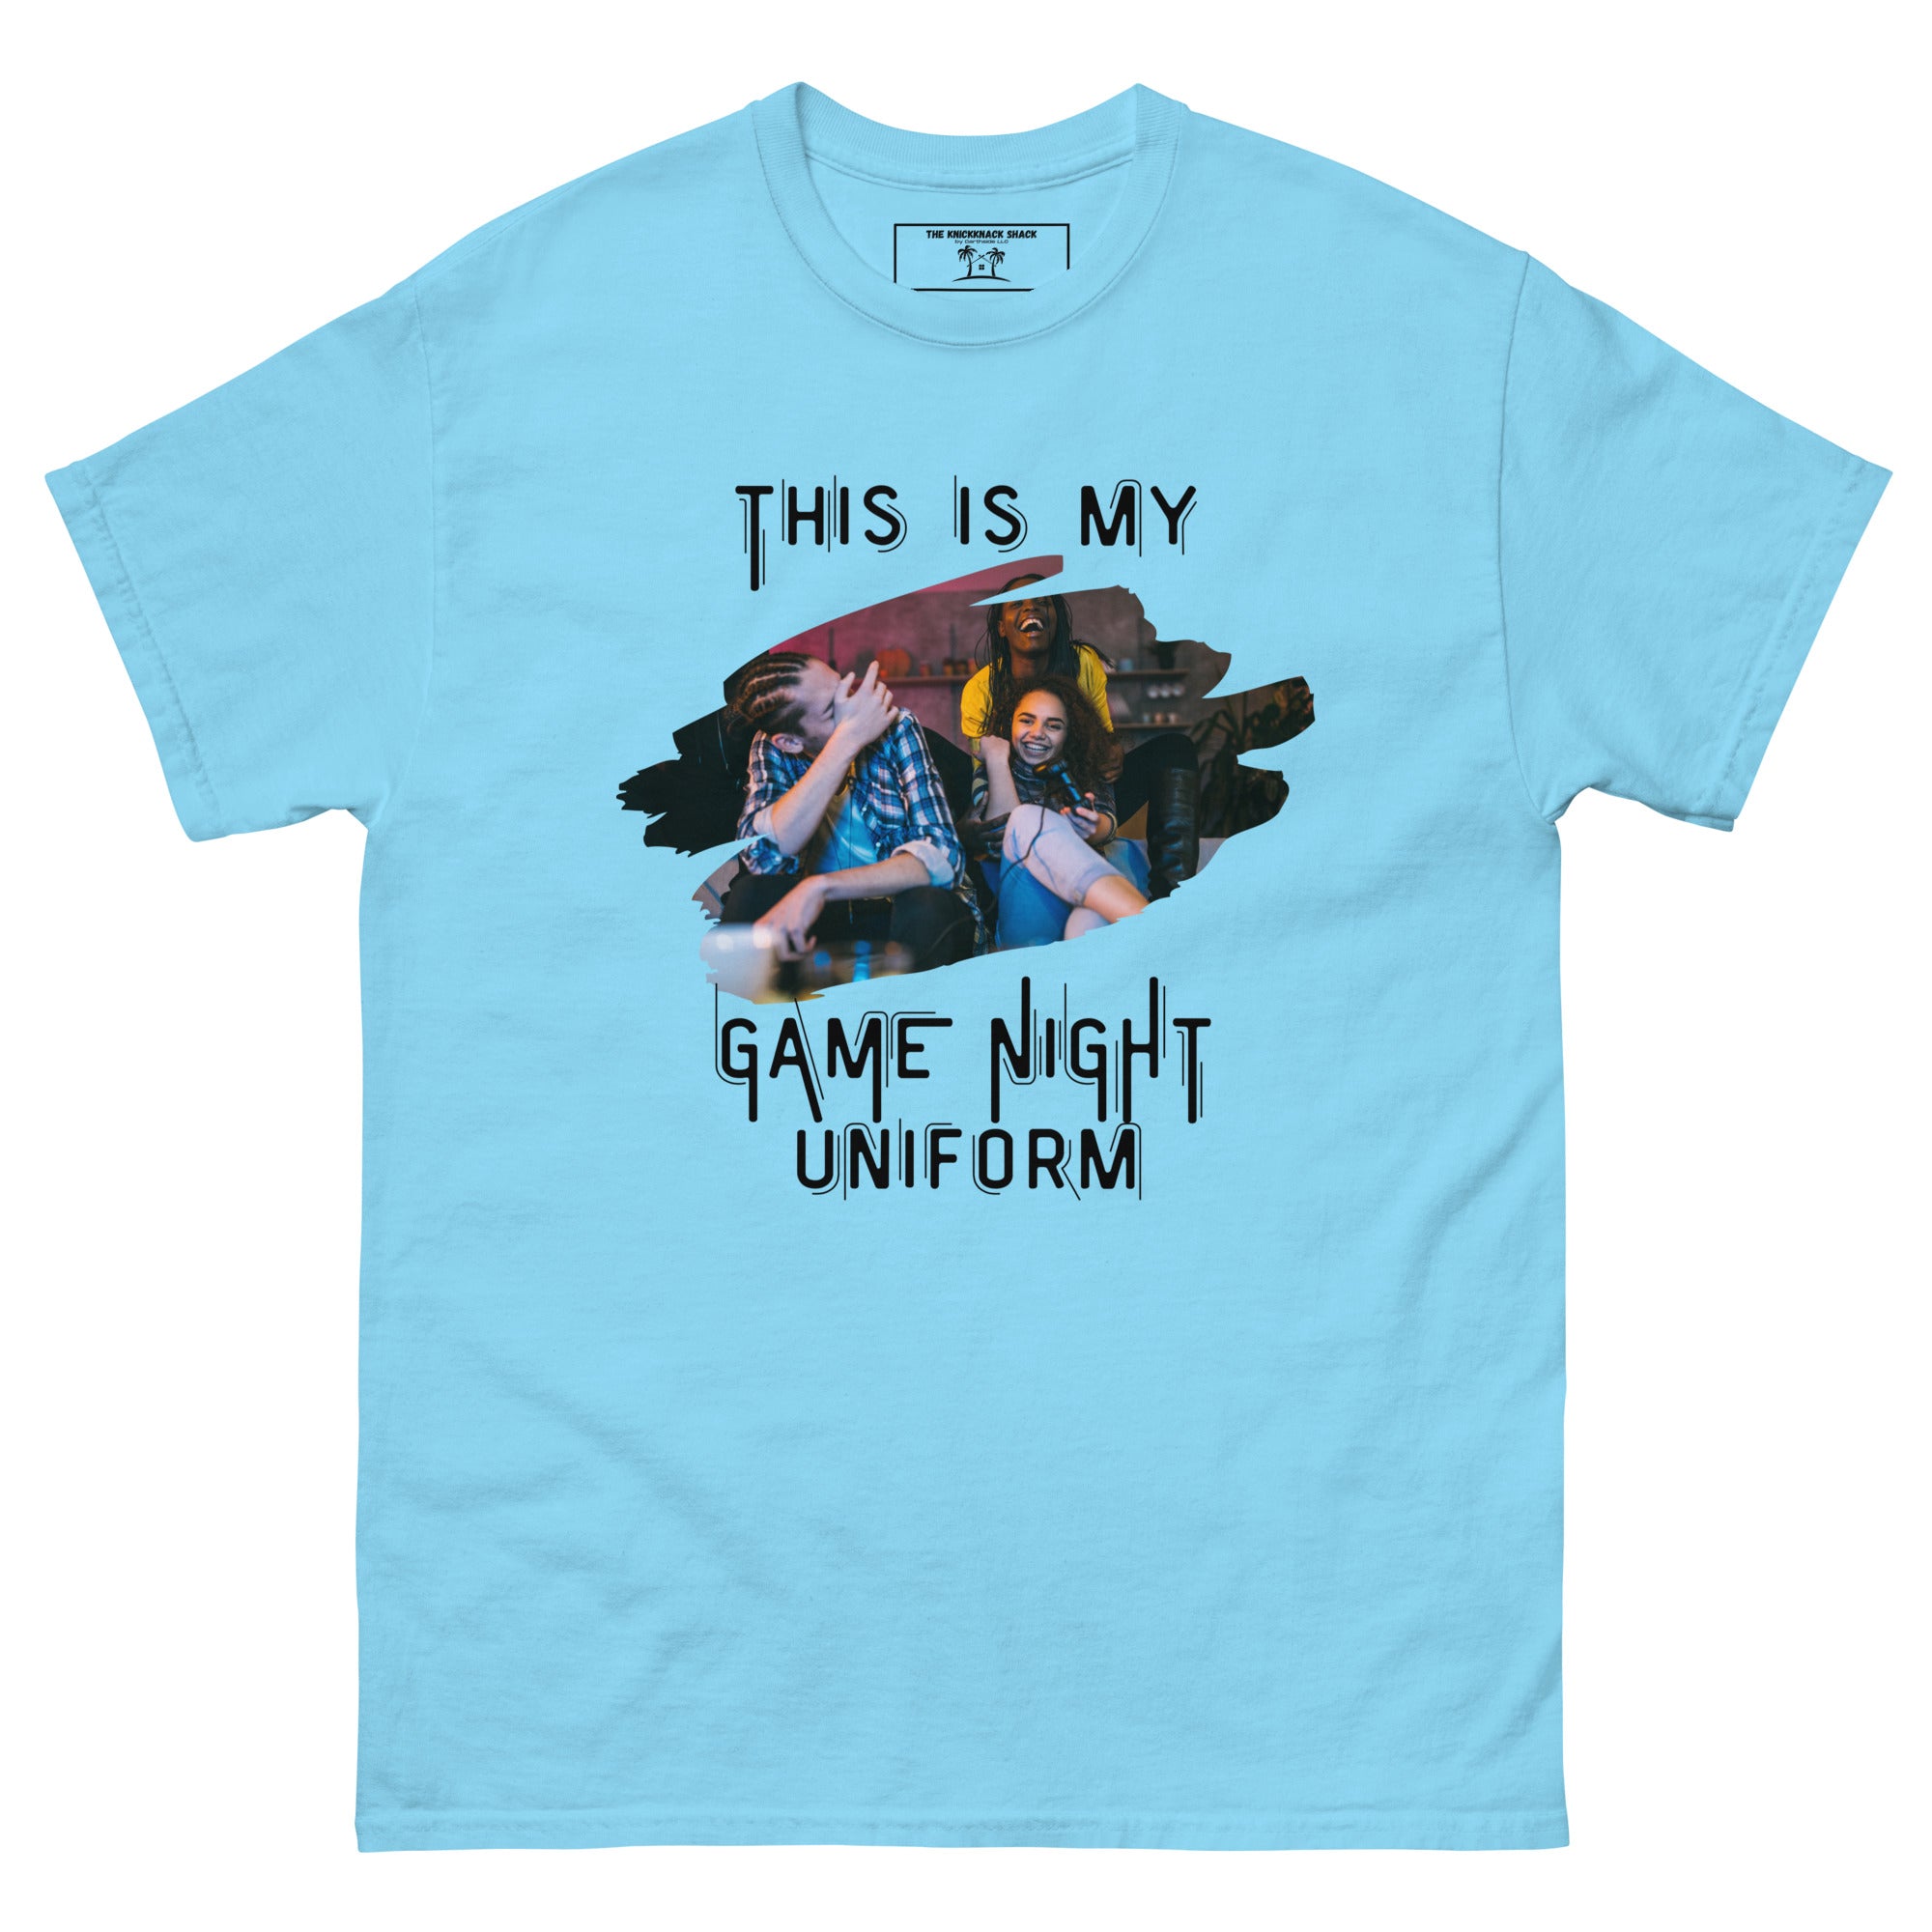 T-shirt classique - Uniforme de soirée de jeu (couleurs claires)